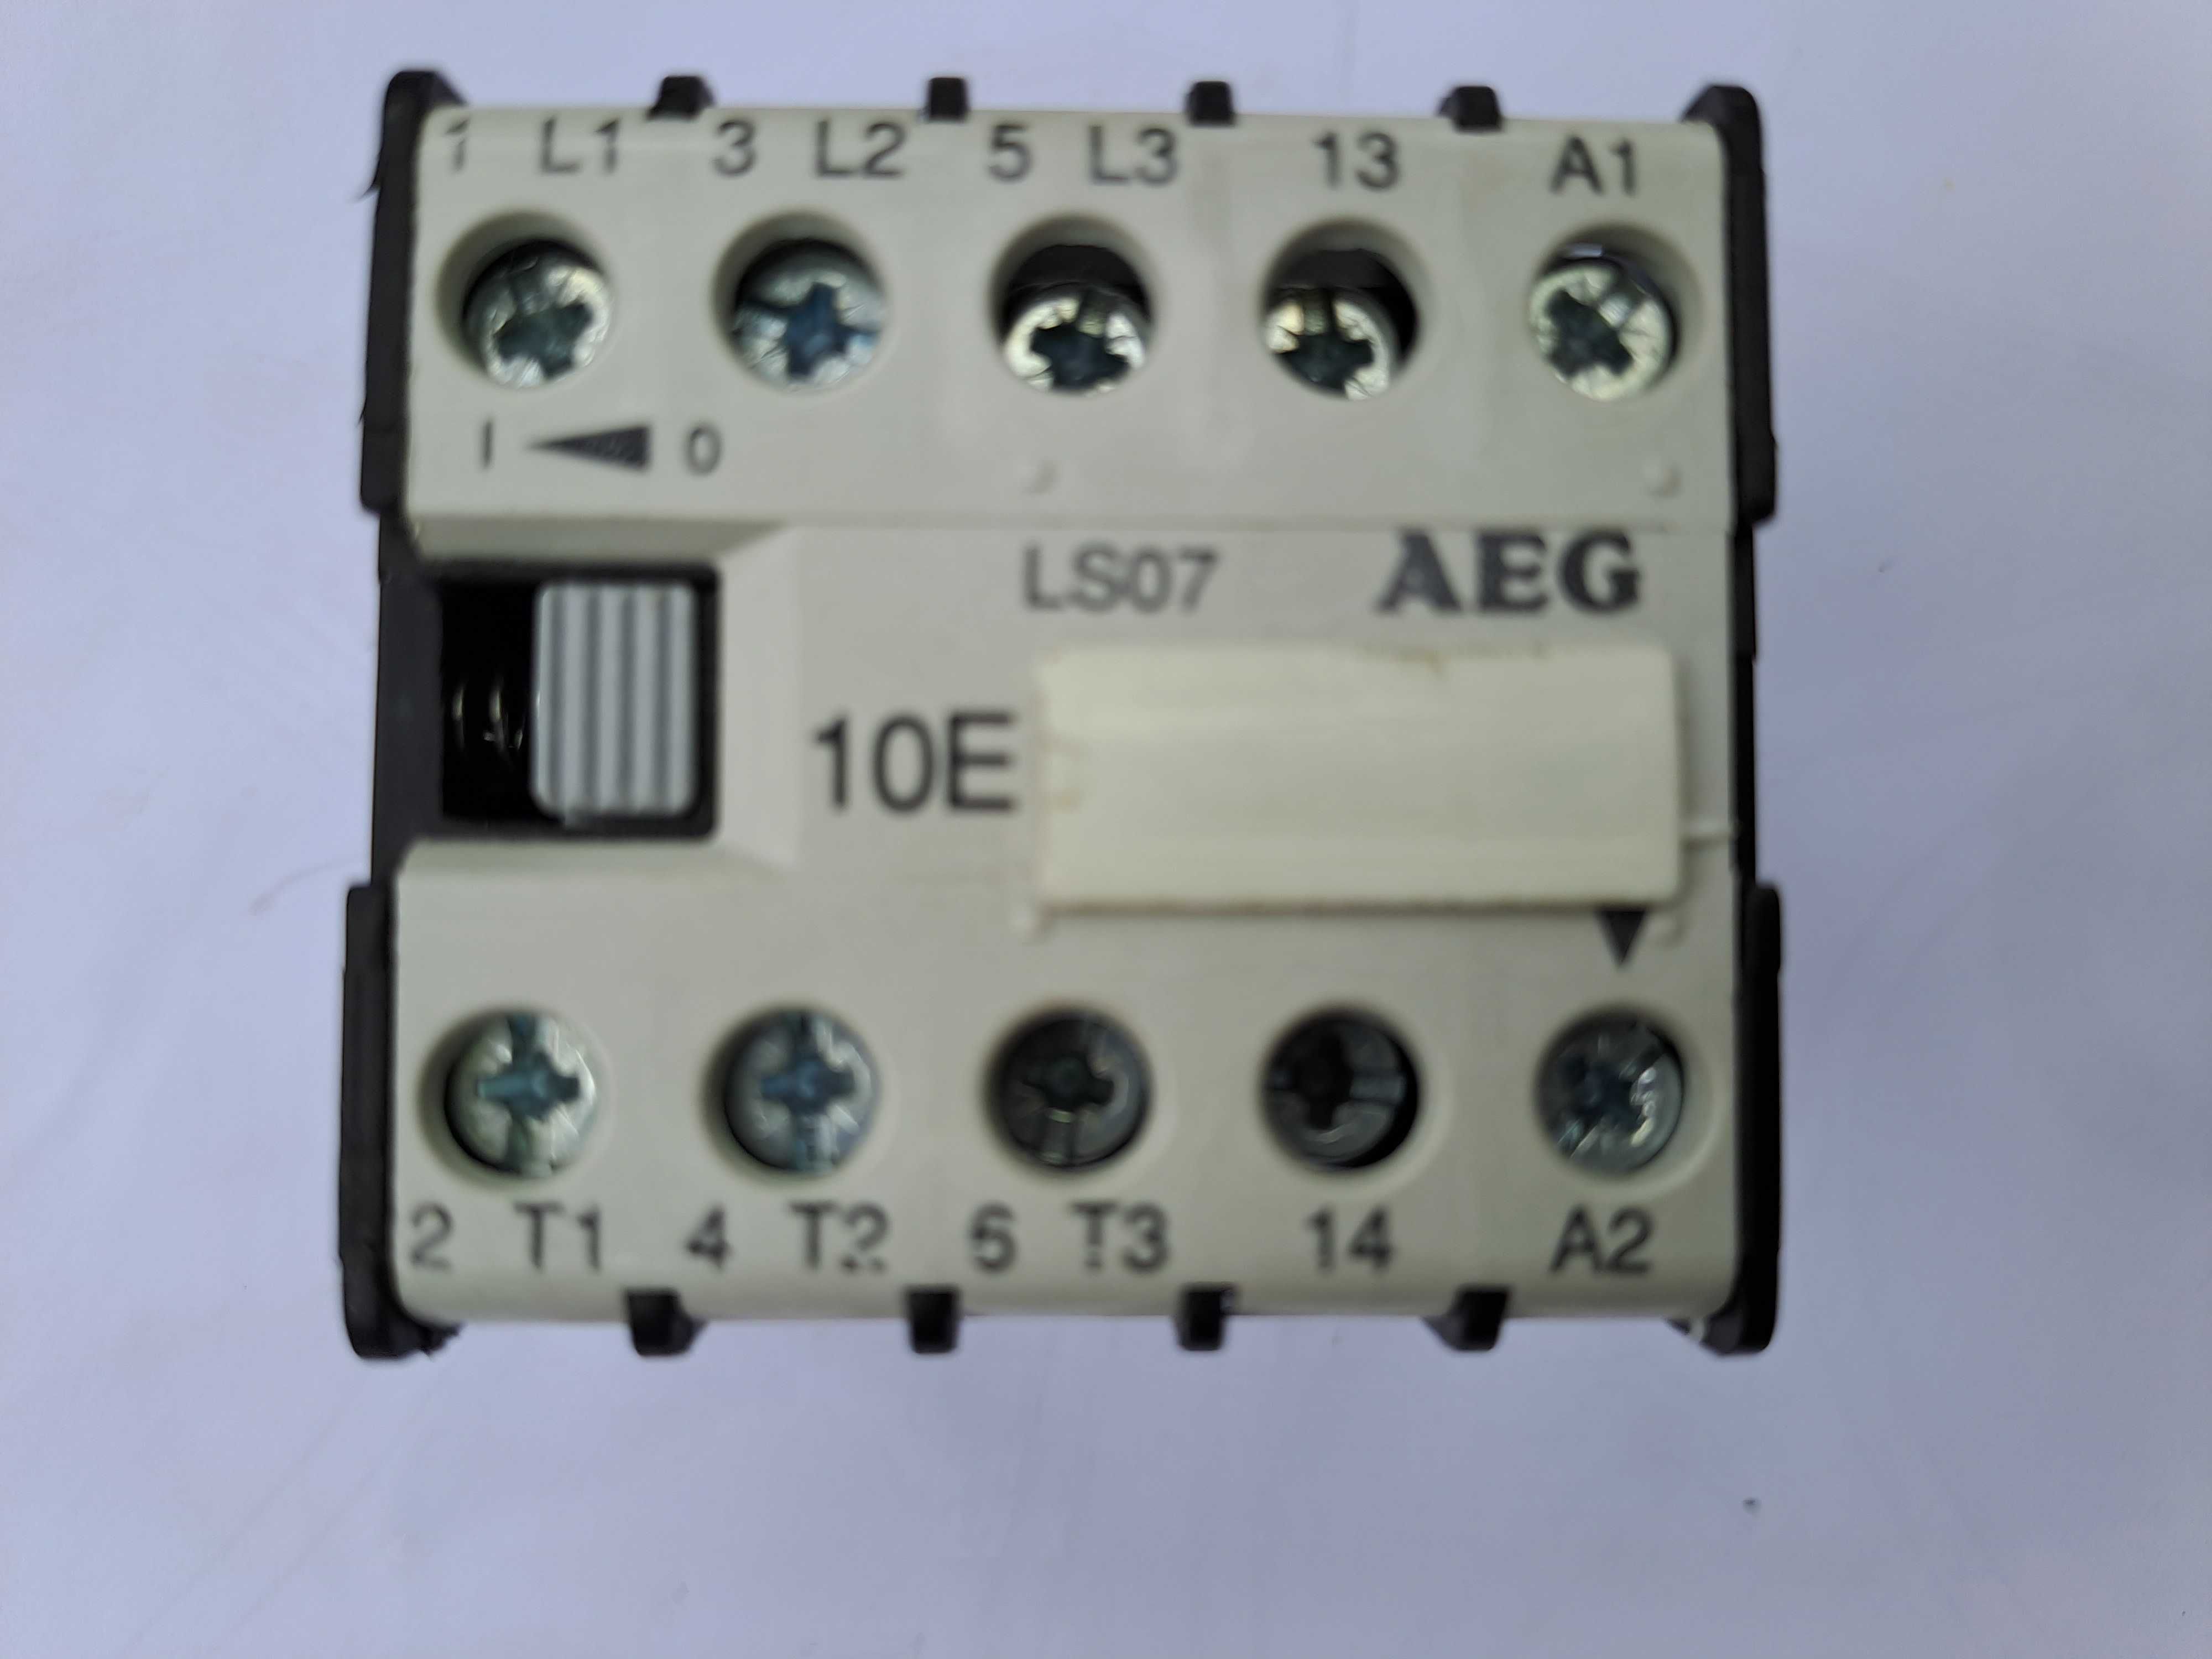 Contactor AEG LS 07 - 10E cu bobina la 24 V.